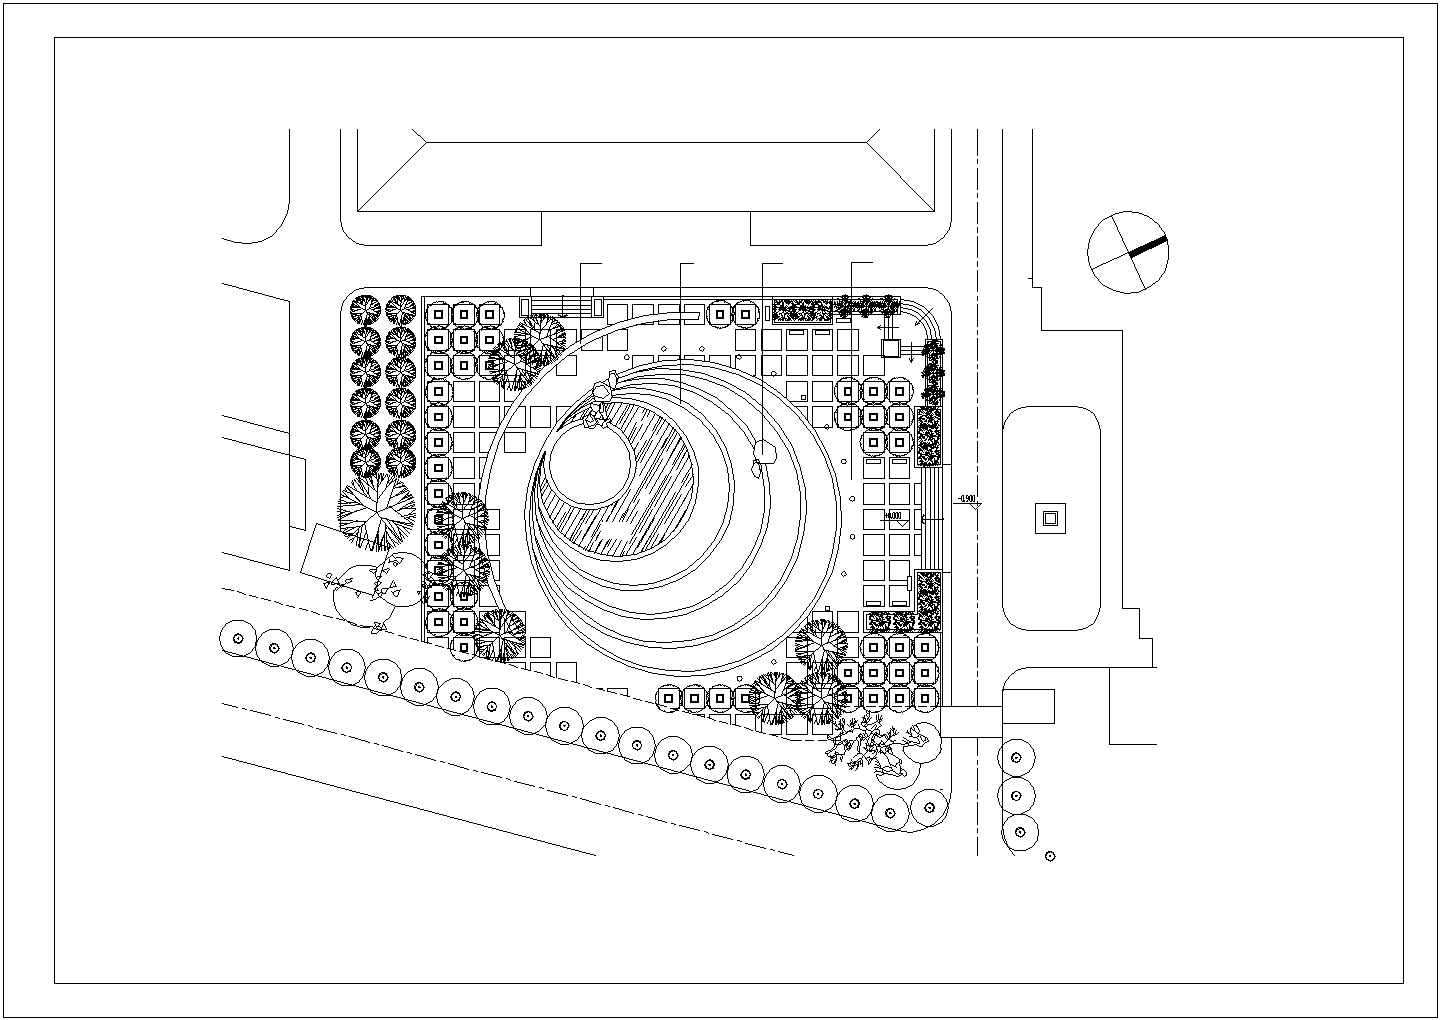 【南通】某公园音乐广场环境规划全套施工设计cad图纸